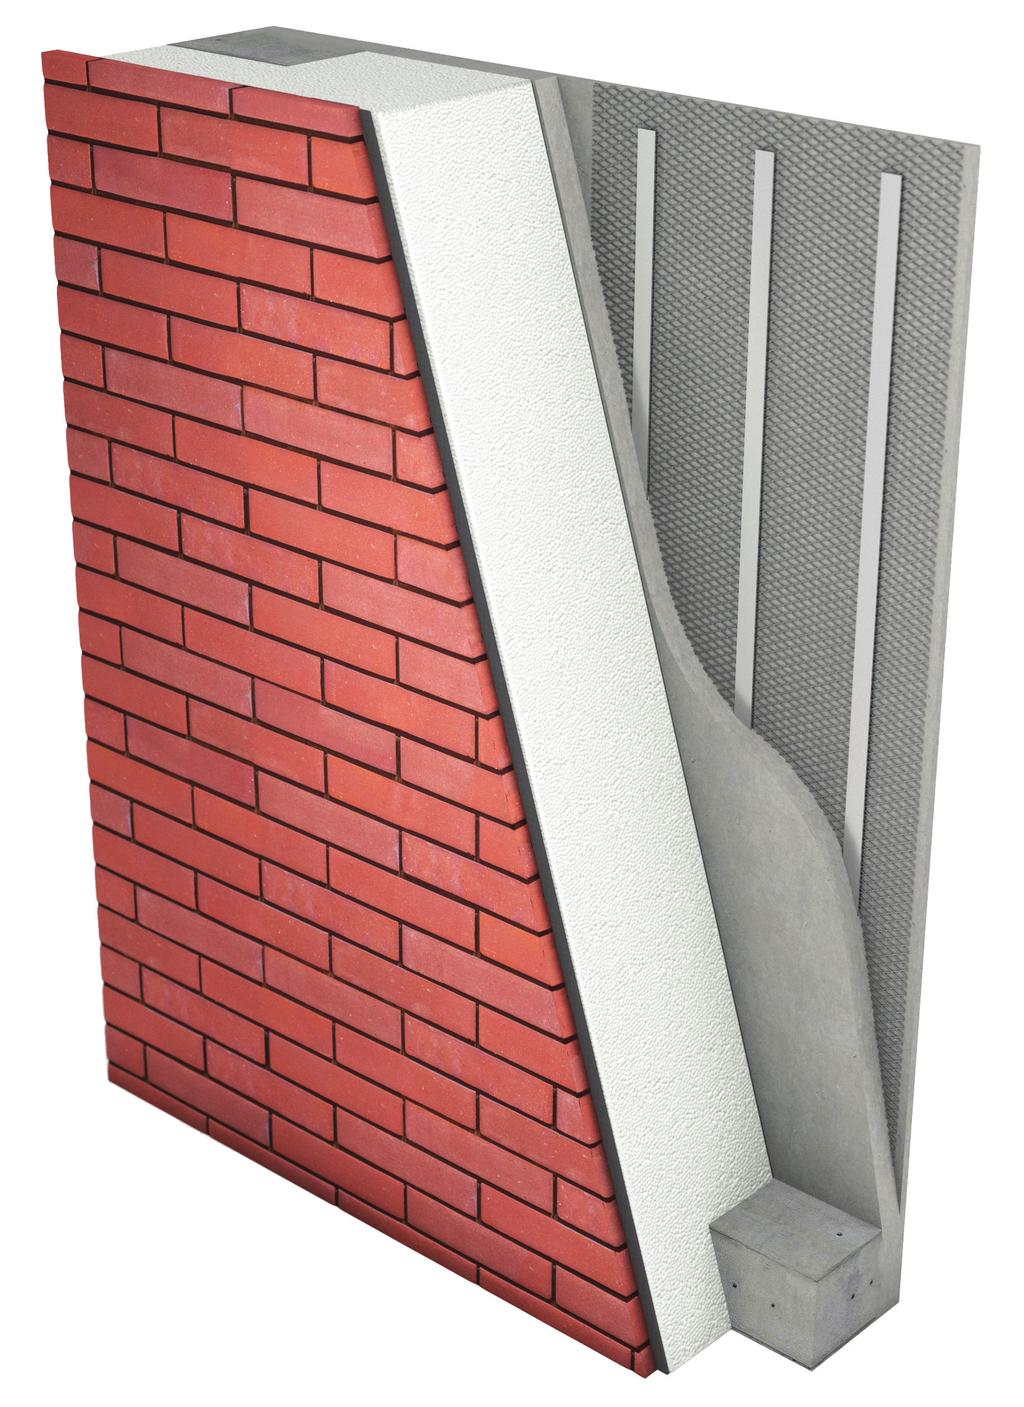 Dodatkowe korzyści Brak mostków cieplnych Przekrój ściany SK36 Dostosowanie do potrzeb konkretnych konstrukcji budynków pozwala na duże oszczędności materiału Fabryczne wykonanie prefabrykatów